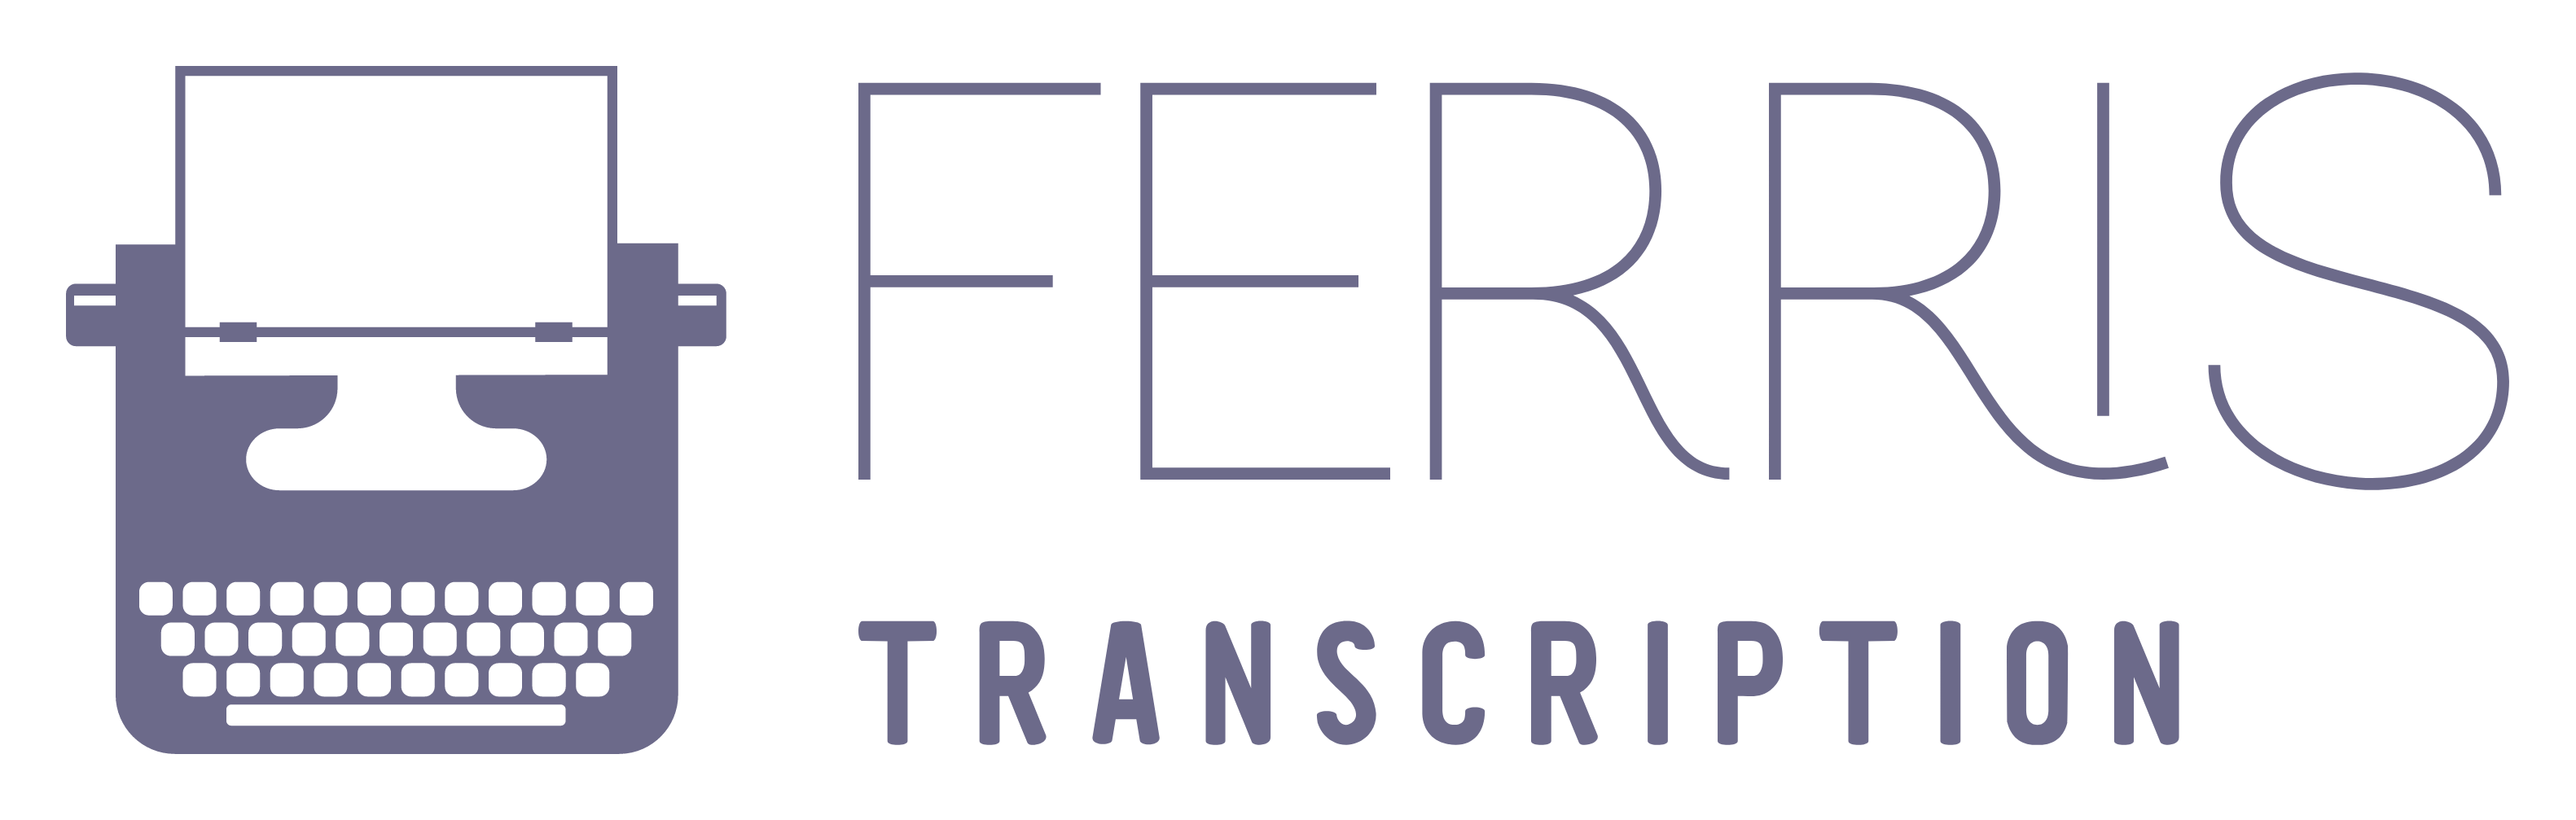 Ferris Transcription Services, Human transcription services, audio transcription